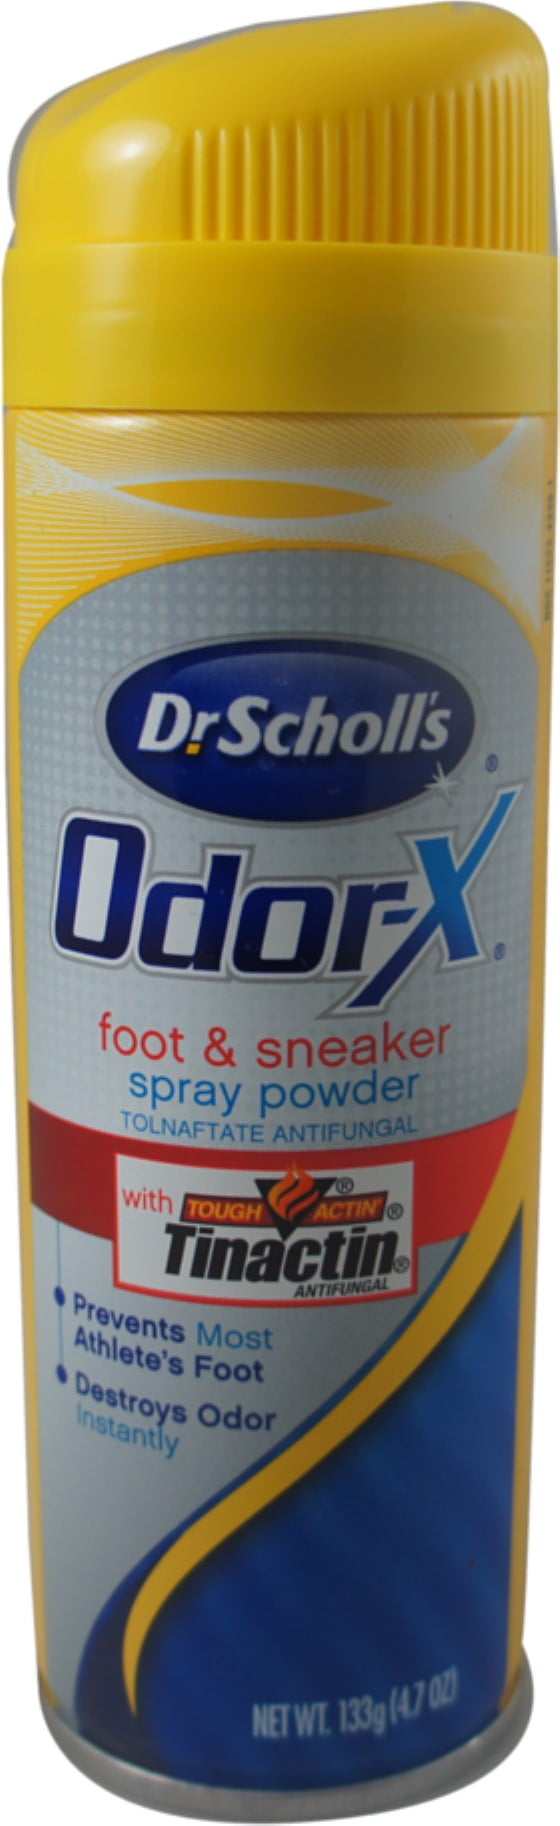 dr scholl's odor destroyers shoe shot